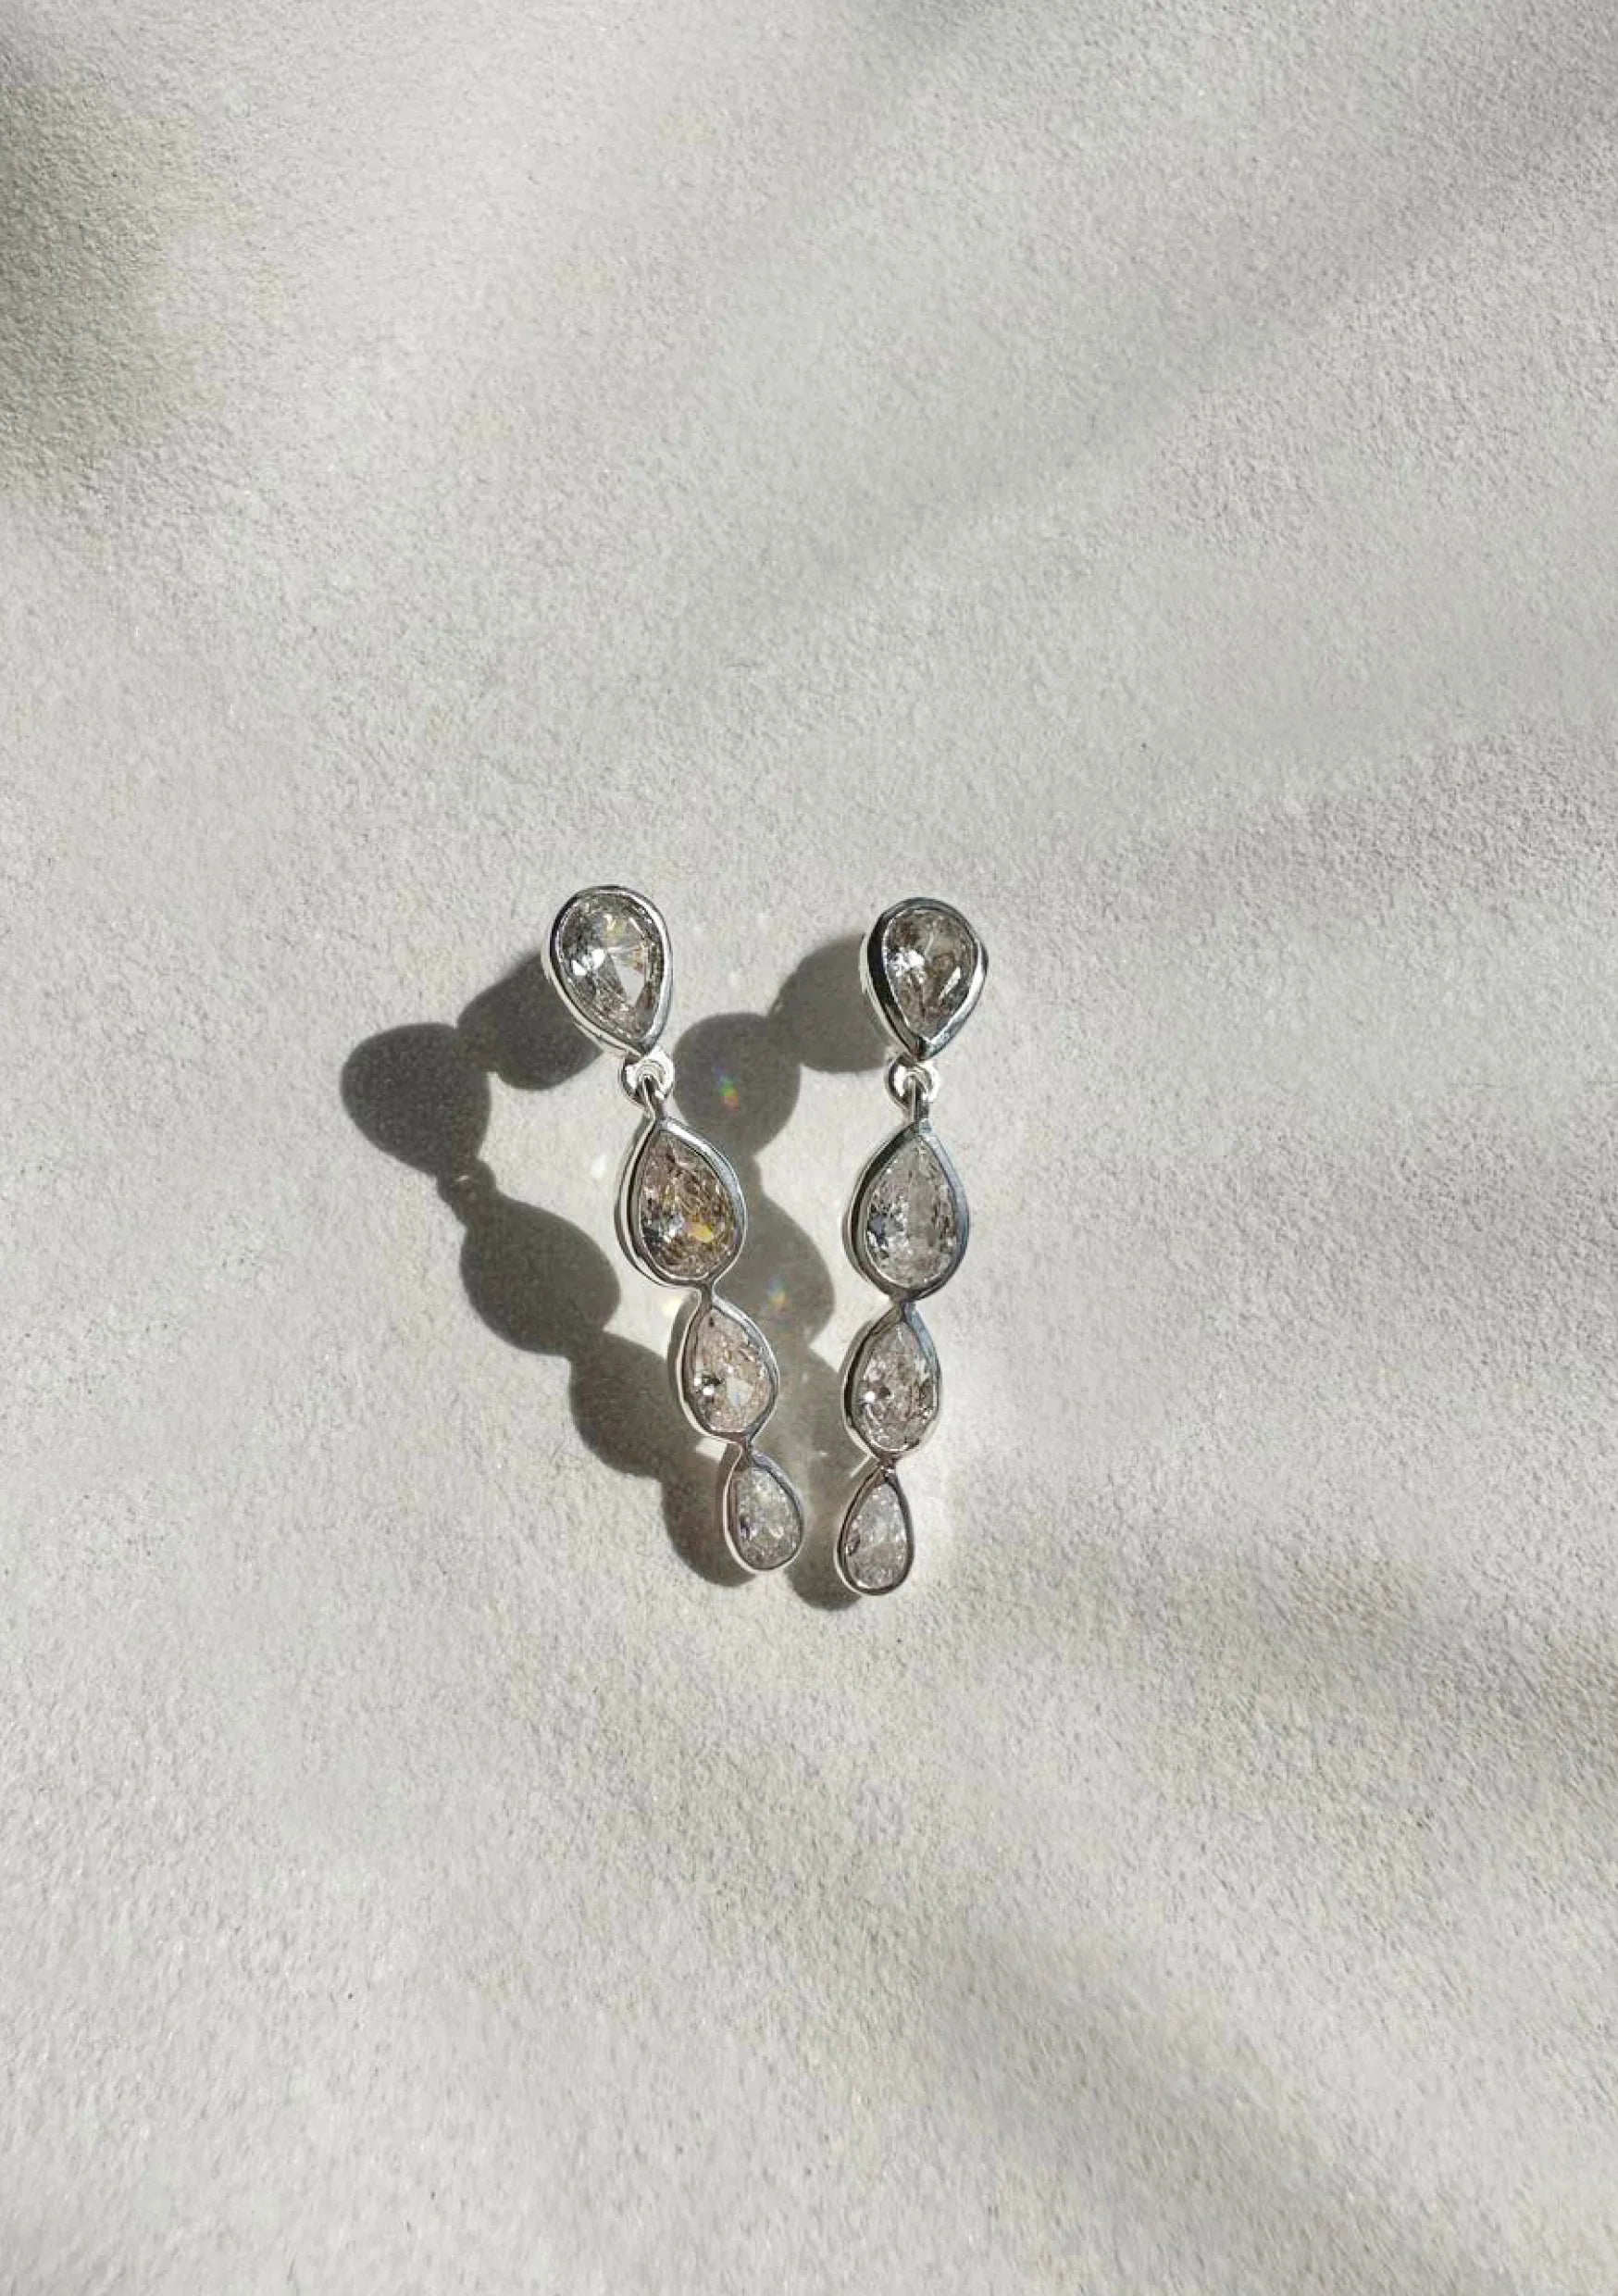 Lola Knight - Genevieve - Cubic Zirconia Crystal Drop Earrings - Silver